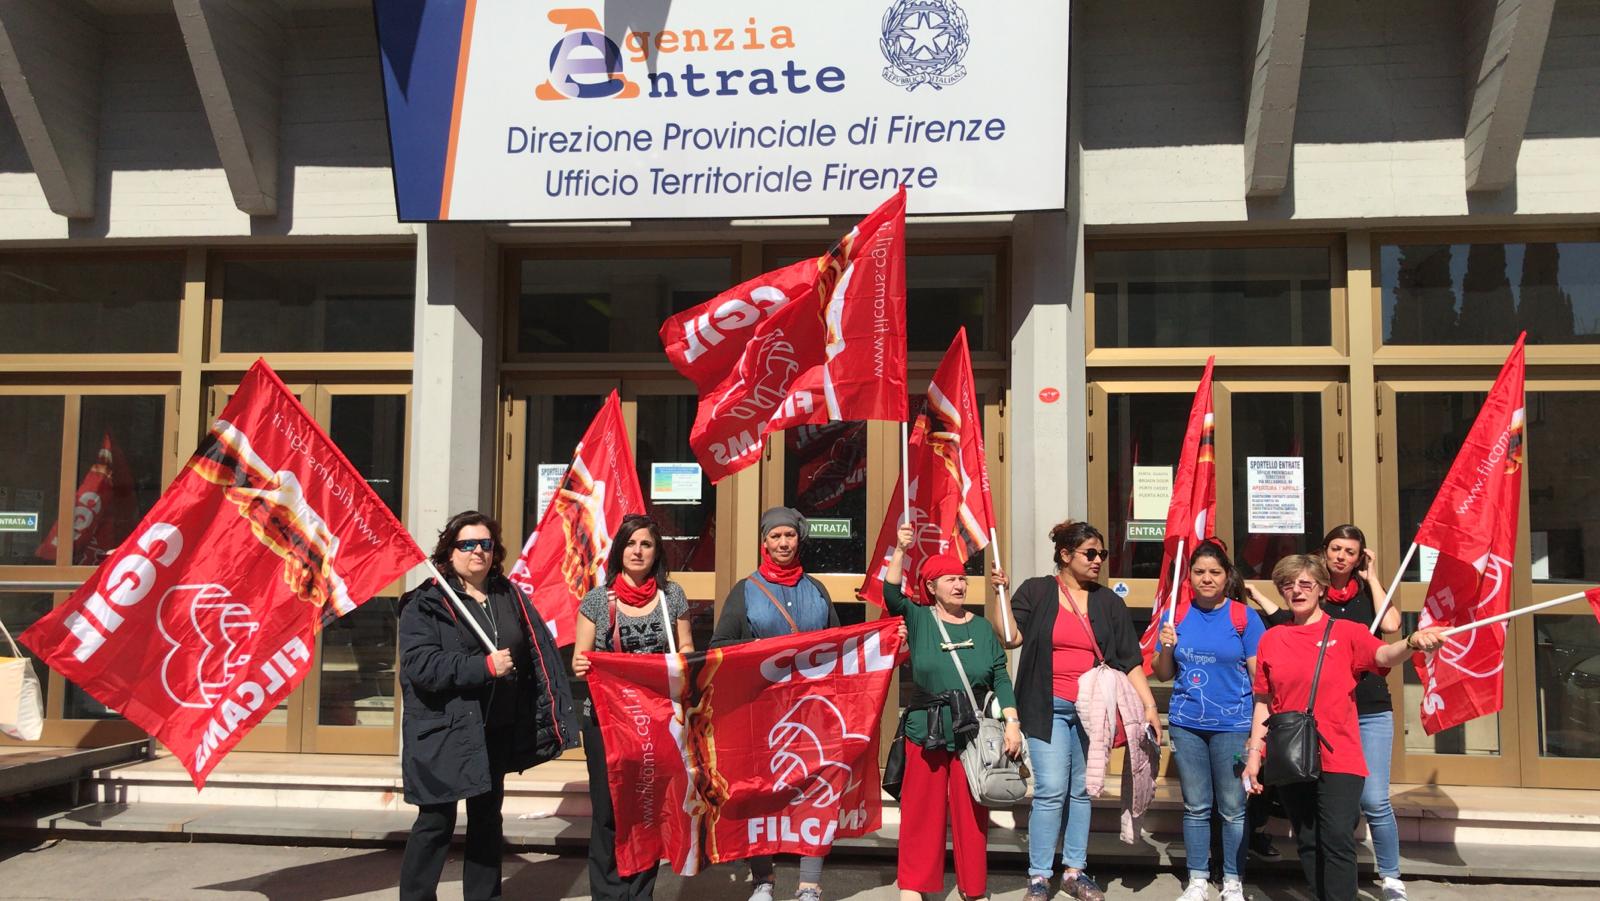 Agenzia delle Entrate: sciopero-presidio lavoratori pulizie per ritardo stipendi